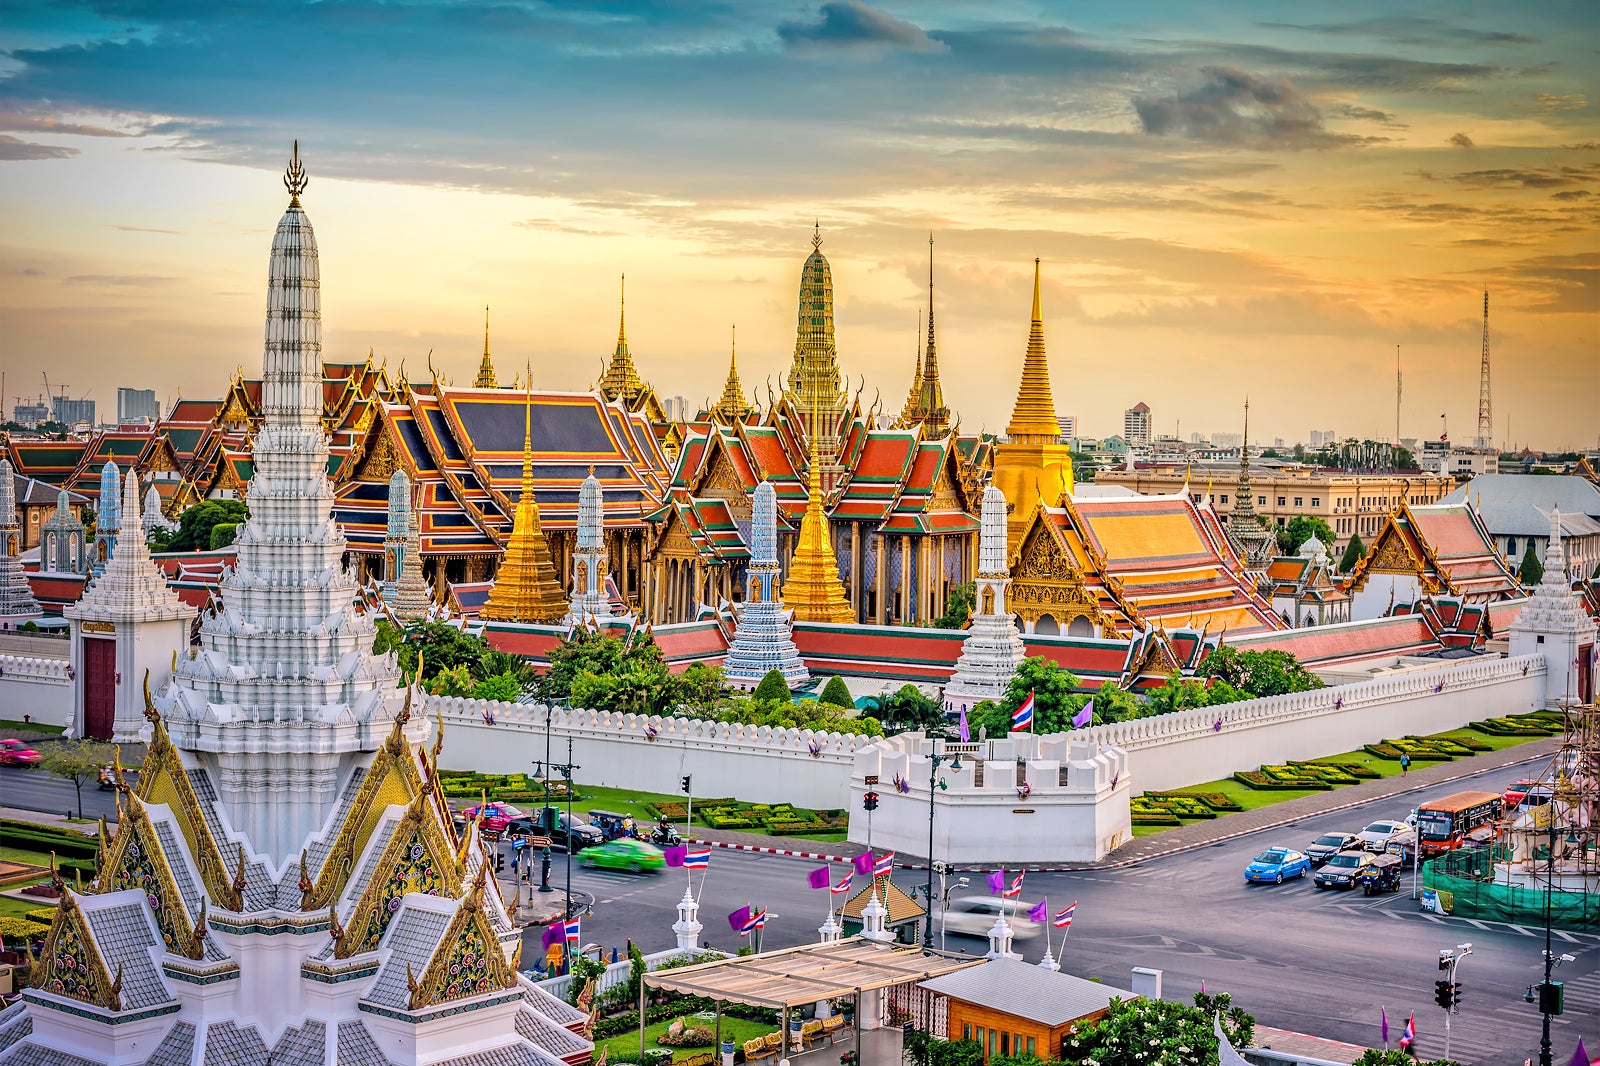 Vue magnifique et historique, voici 7 lieux uniques en Thaïlande, parfaits pour les flux Instagram !